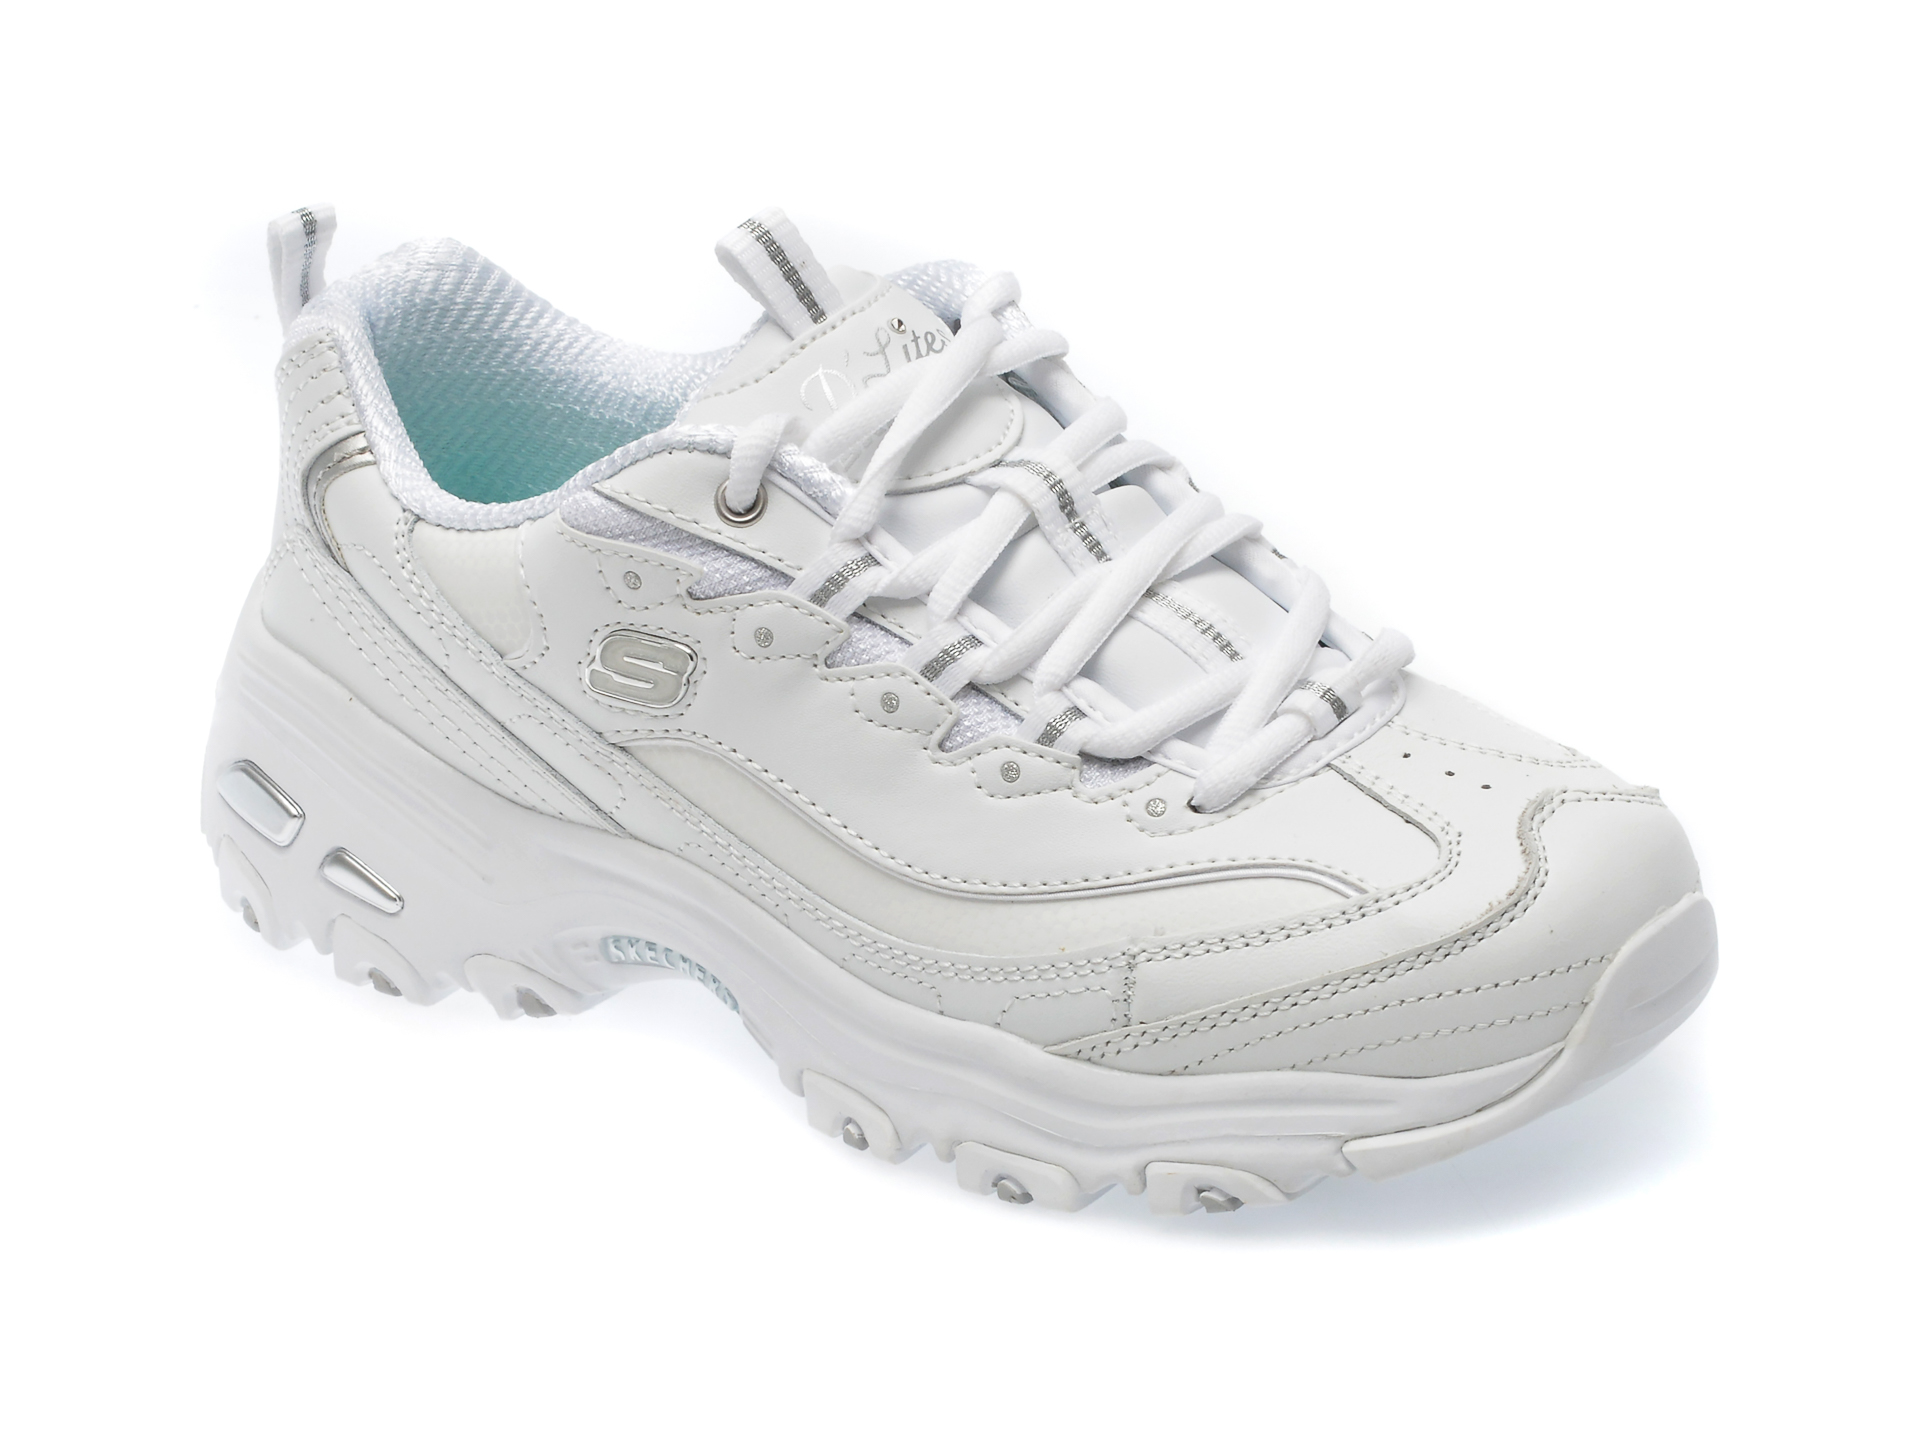 Pantofi SKECHERS albi, D LITES, din piele ecologica